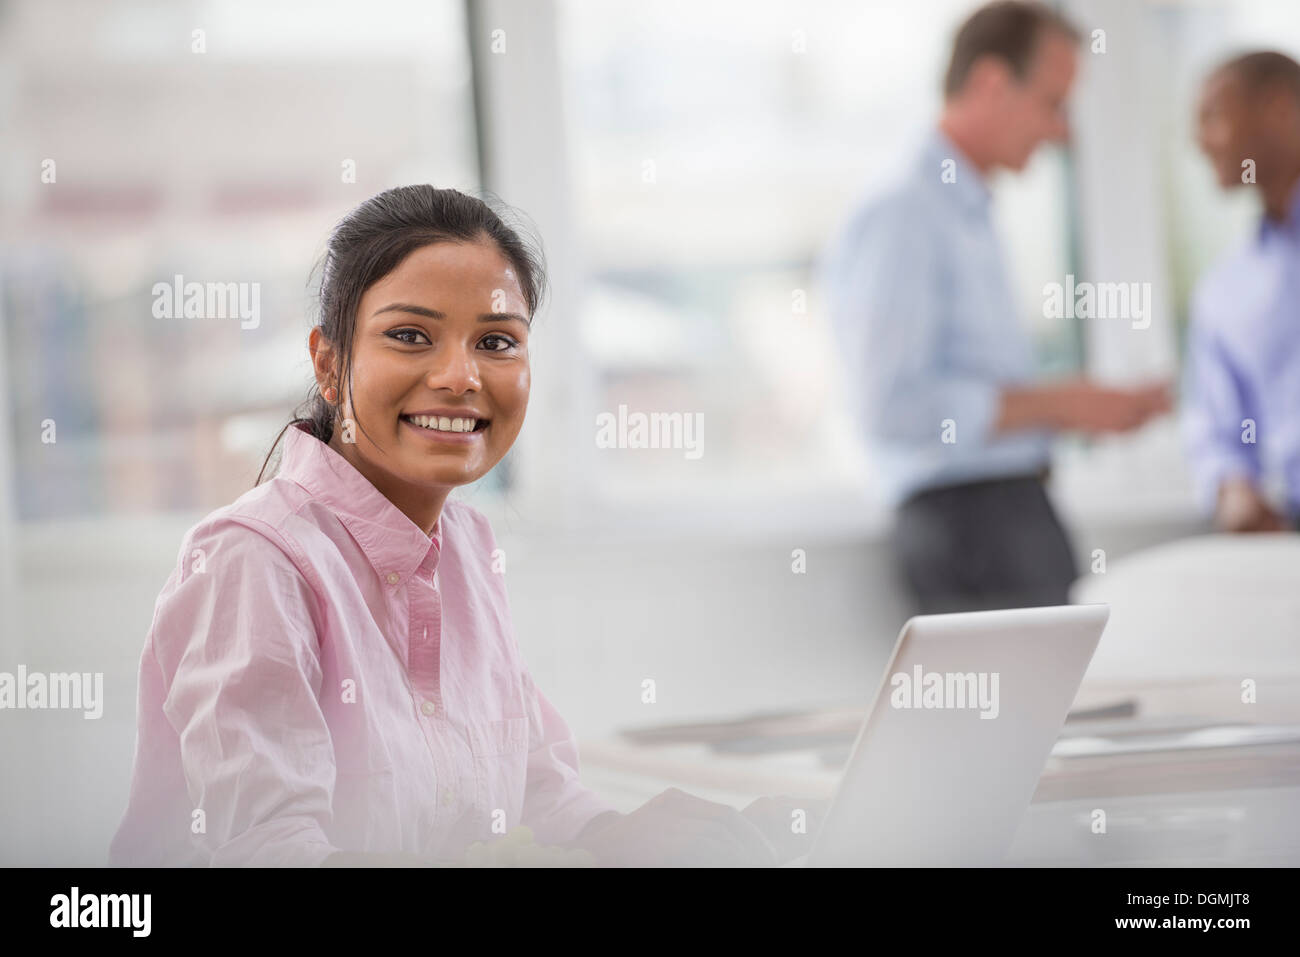 La vie de bureau. Une femme assise à un bureau à l'aide d'un ordinateur portable. Deux hommes dans l'arrière-plan. Banque D'Images